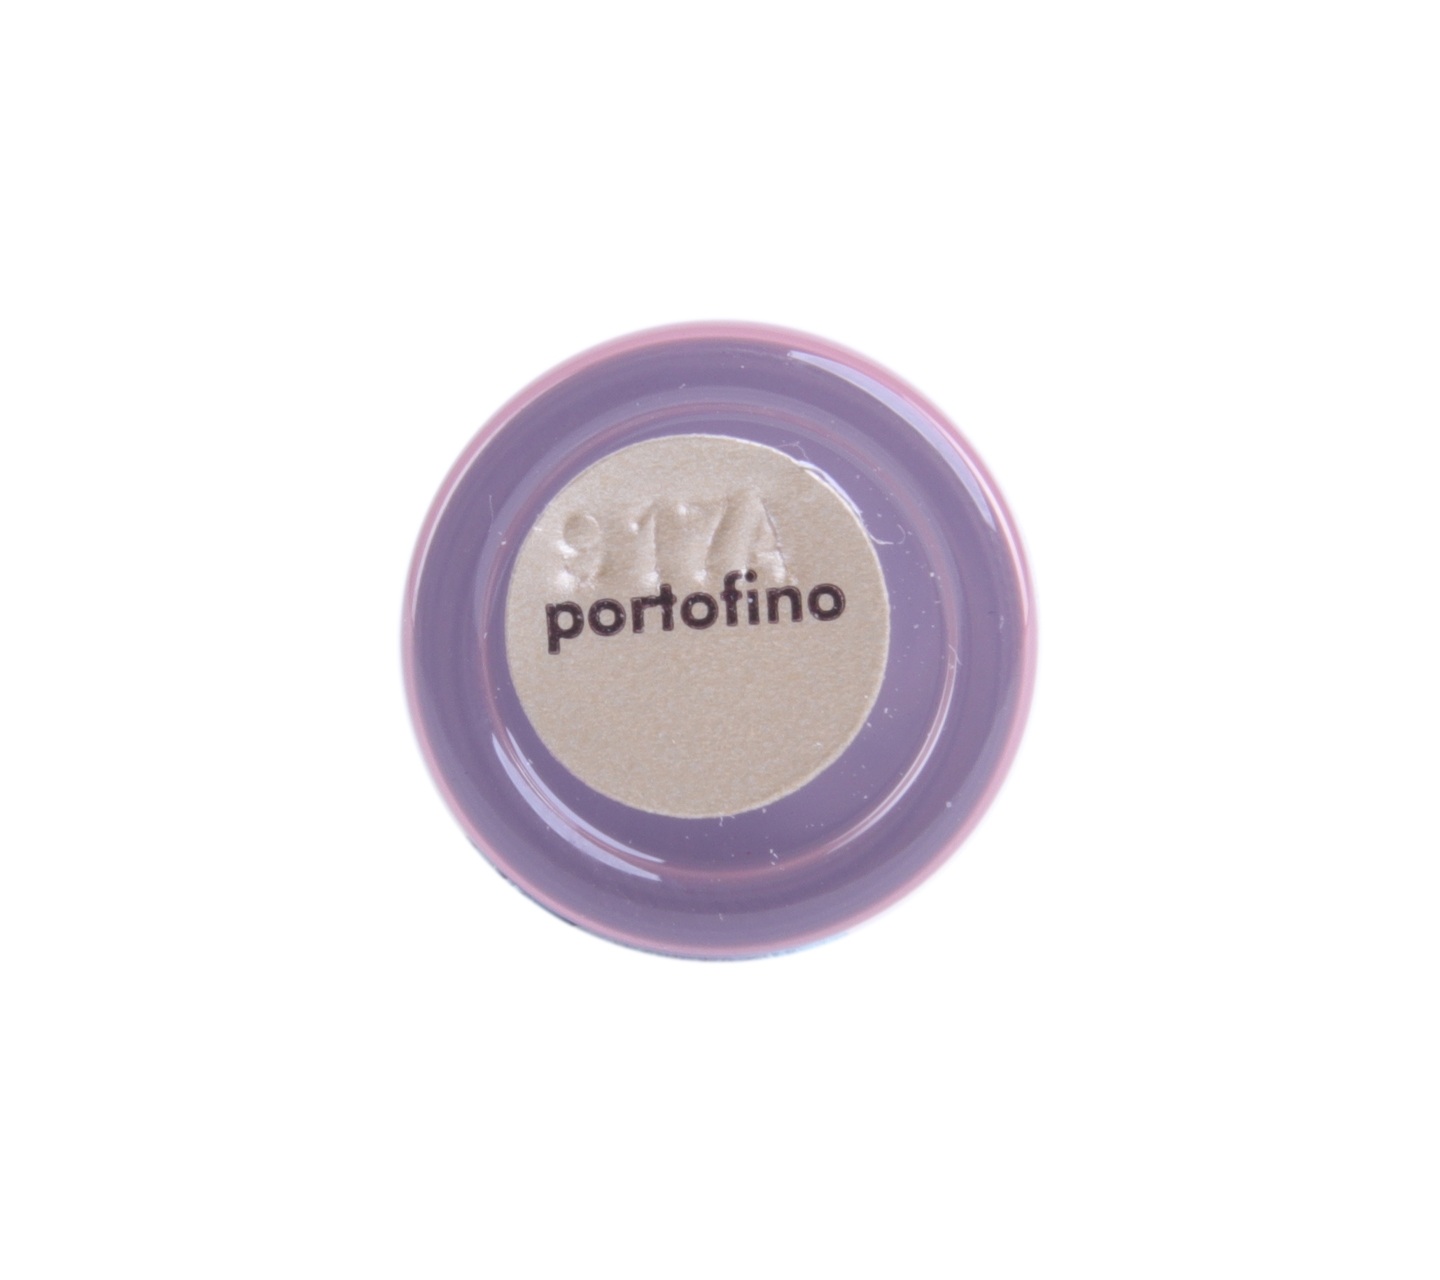 Stila Portofino Lips